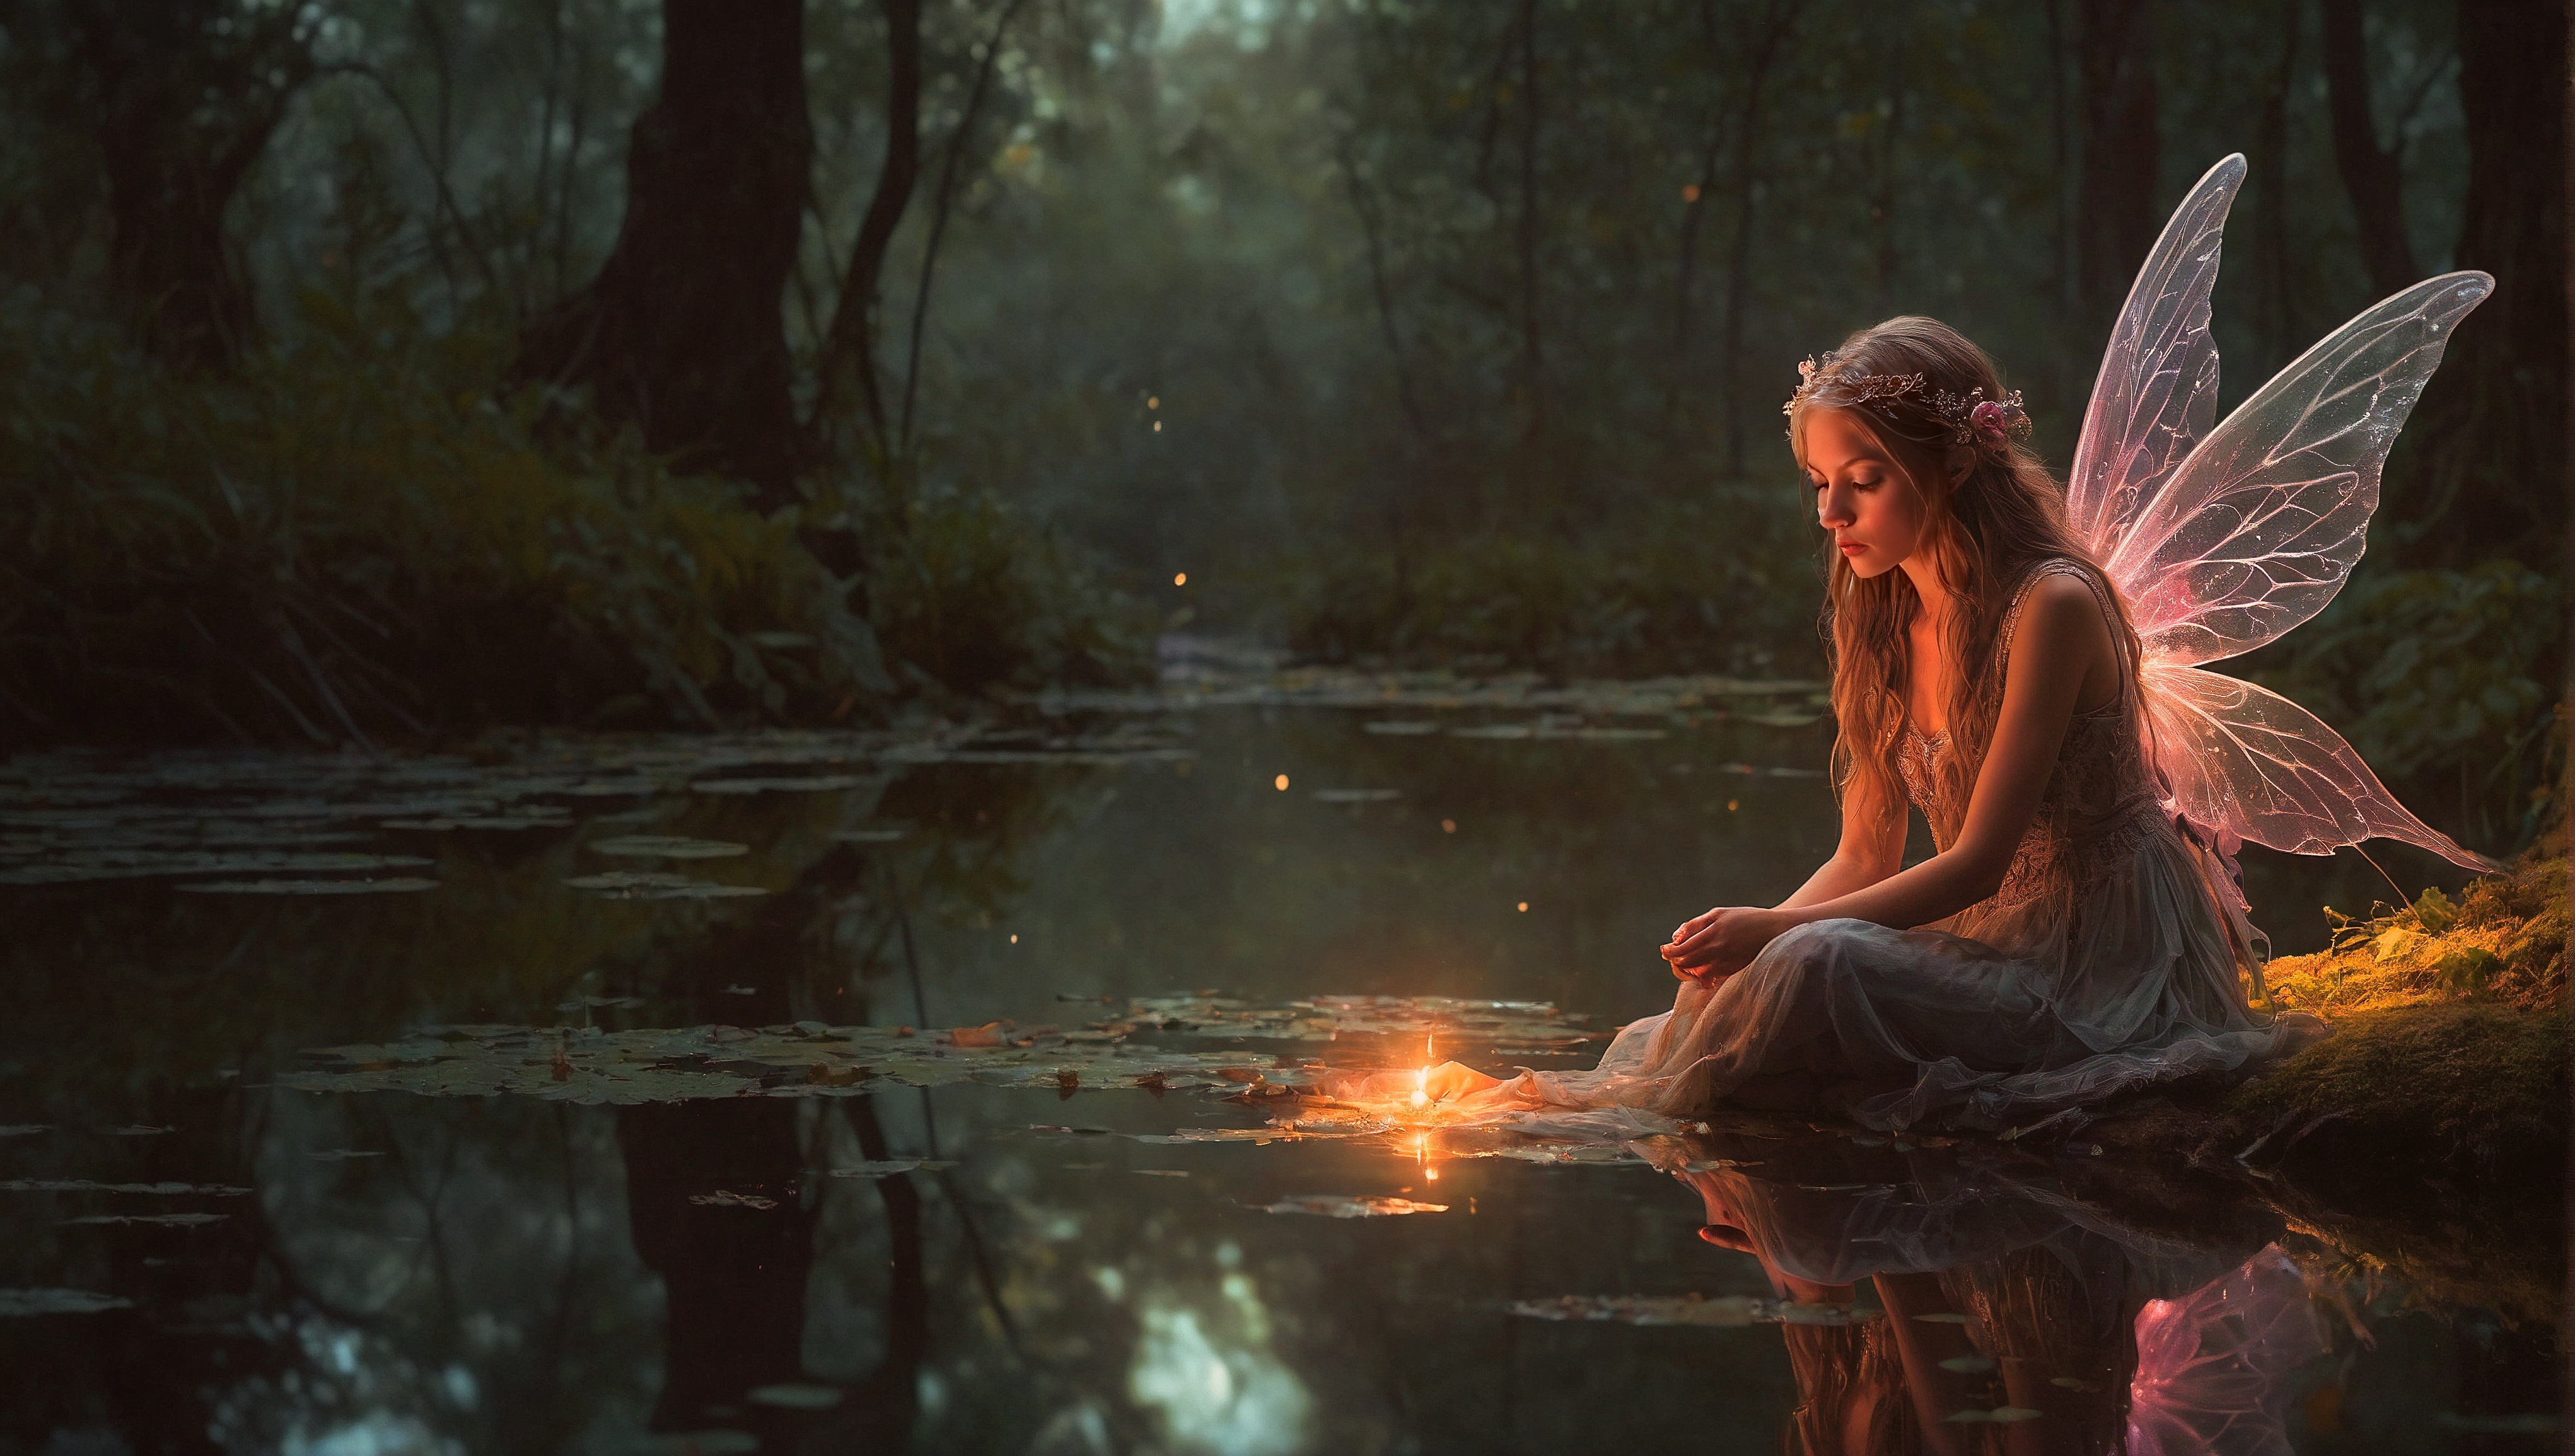 Фея сидит на берегу пруда рядом с маленькой свечой.